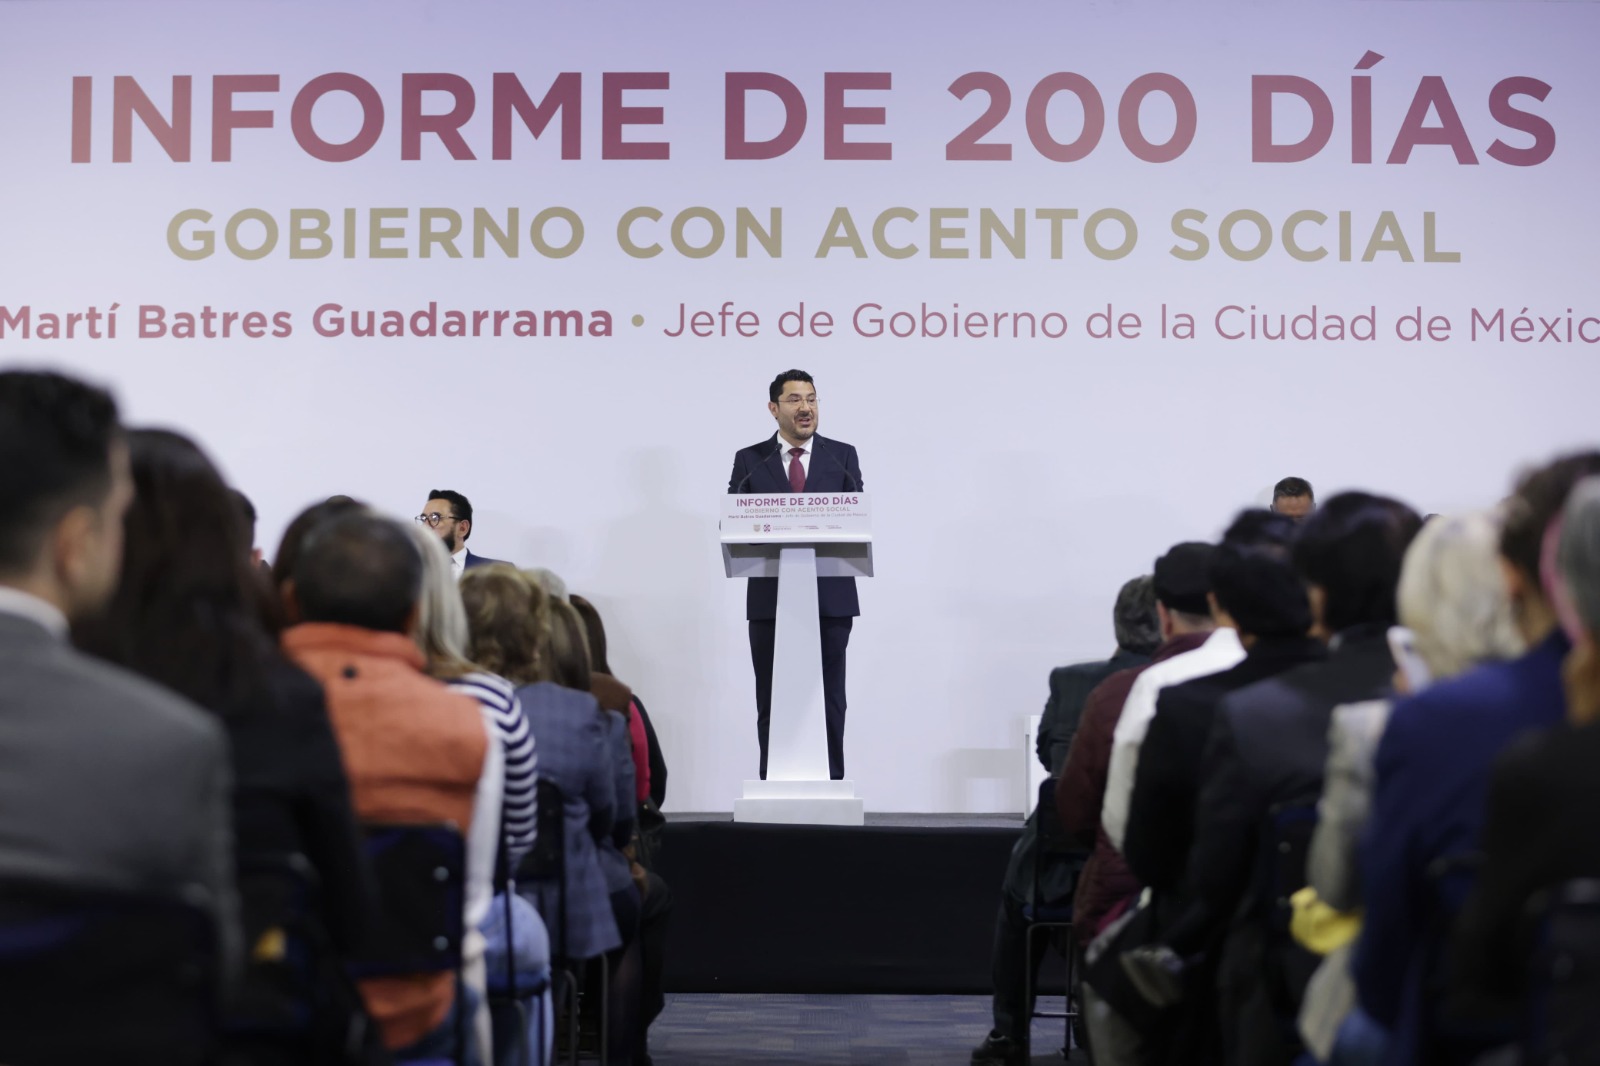 Martí Batres presenta los avances en su gobierno durante los primeros 200 días